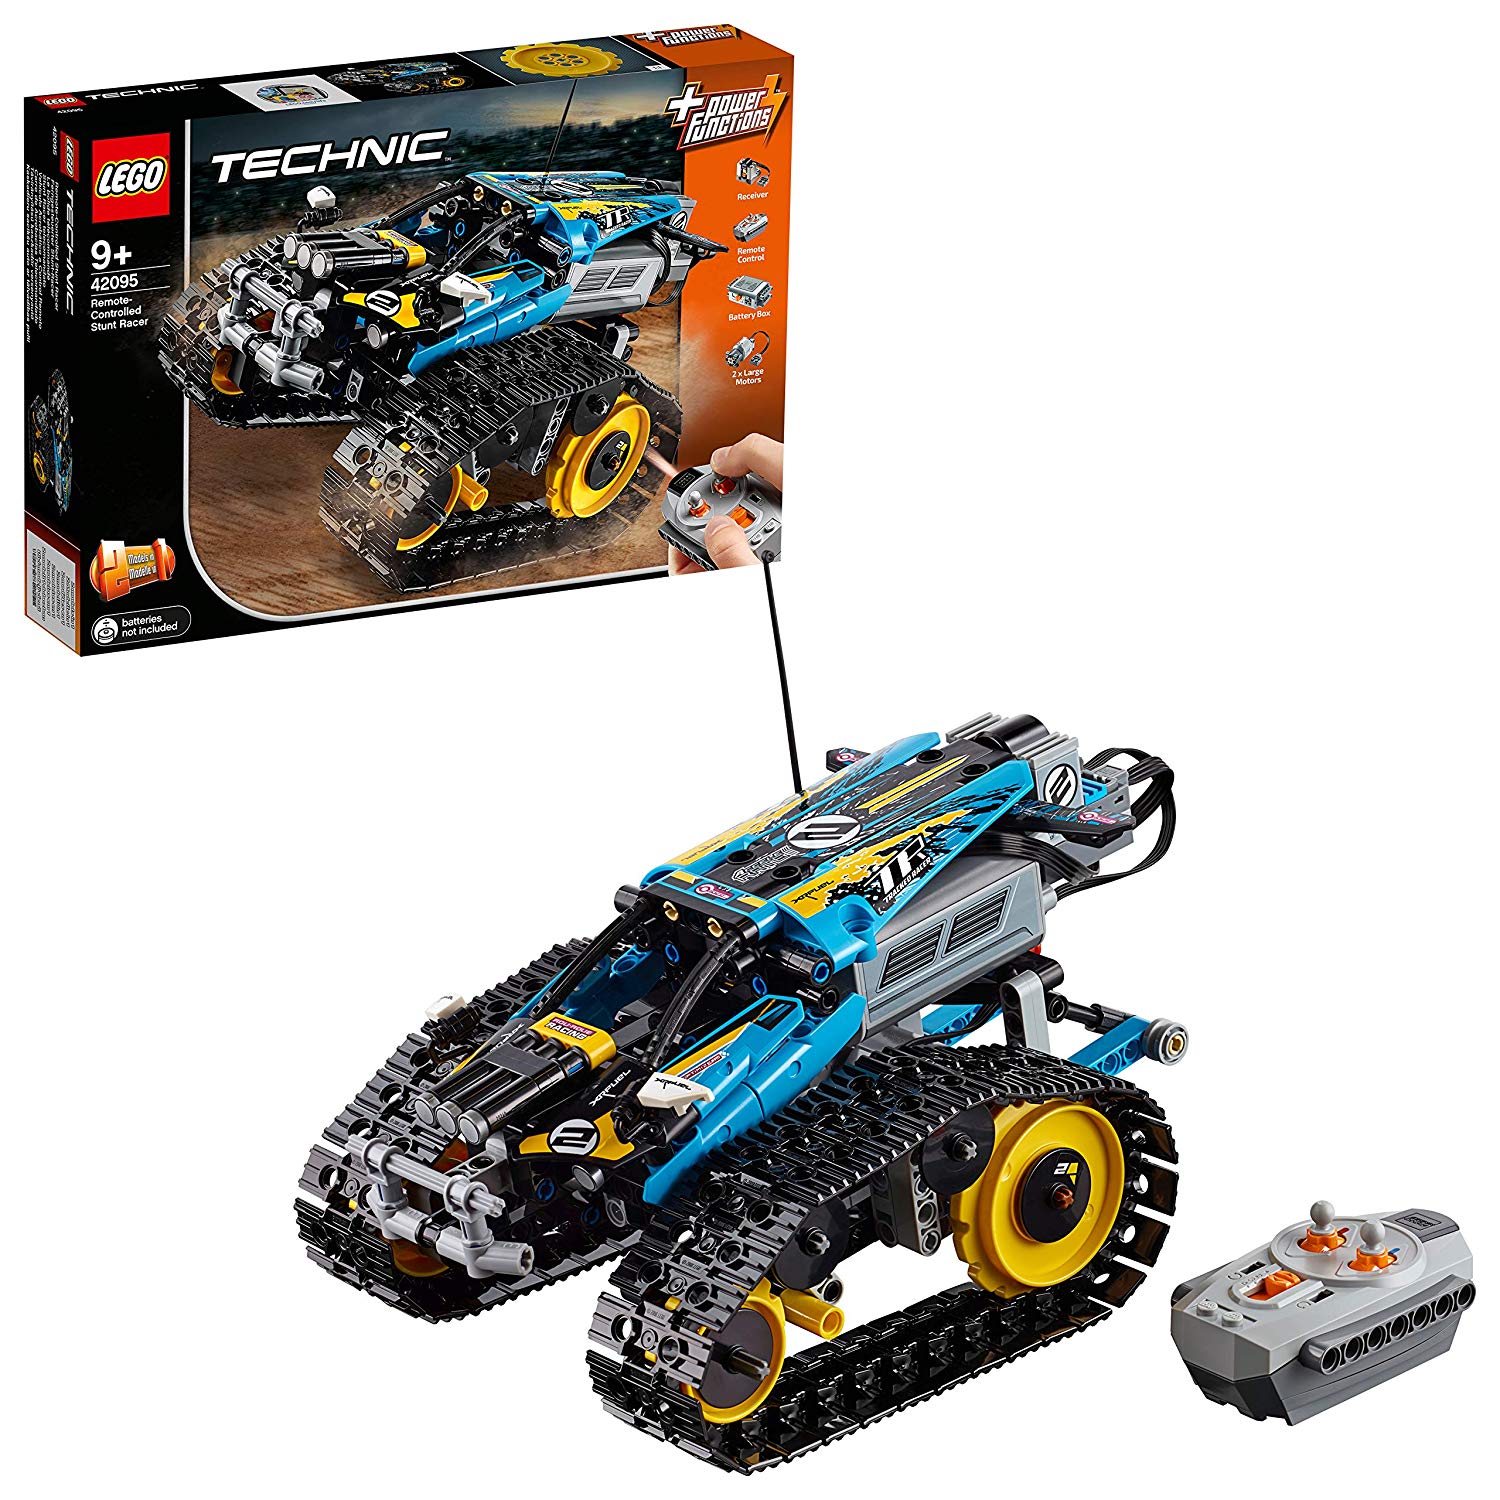 LEGO Technic - Le bolide télécommandé - 42095 - Jeu de construction